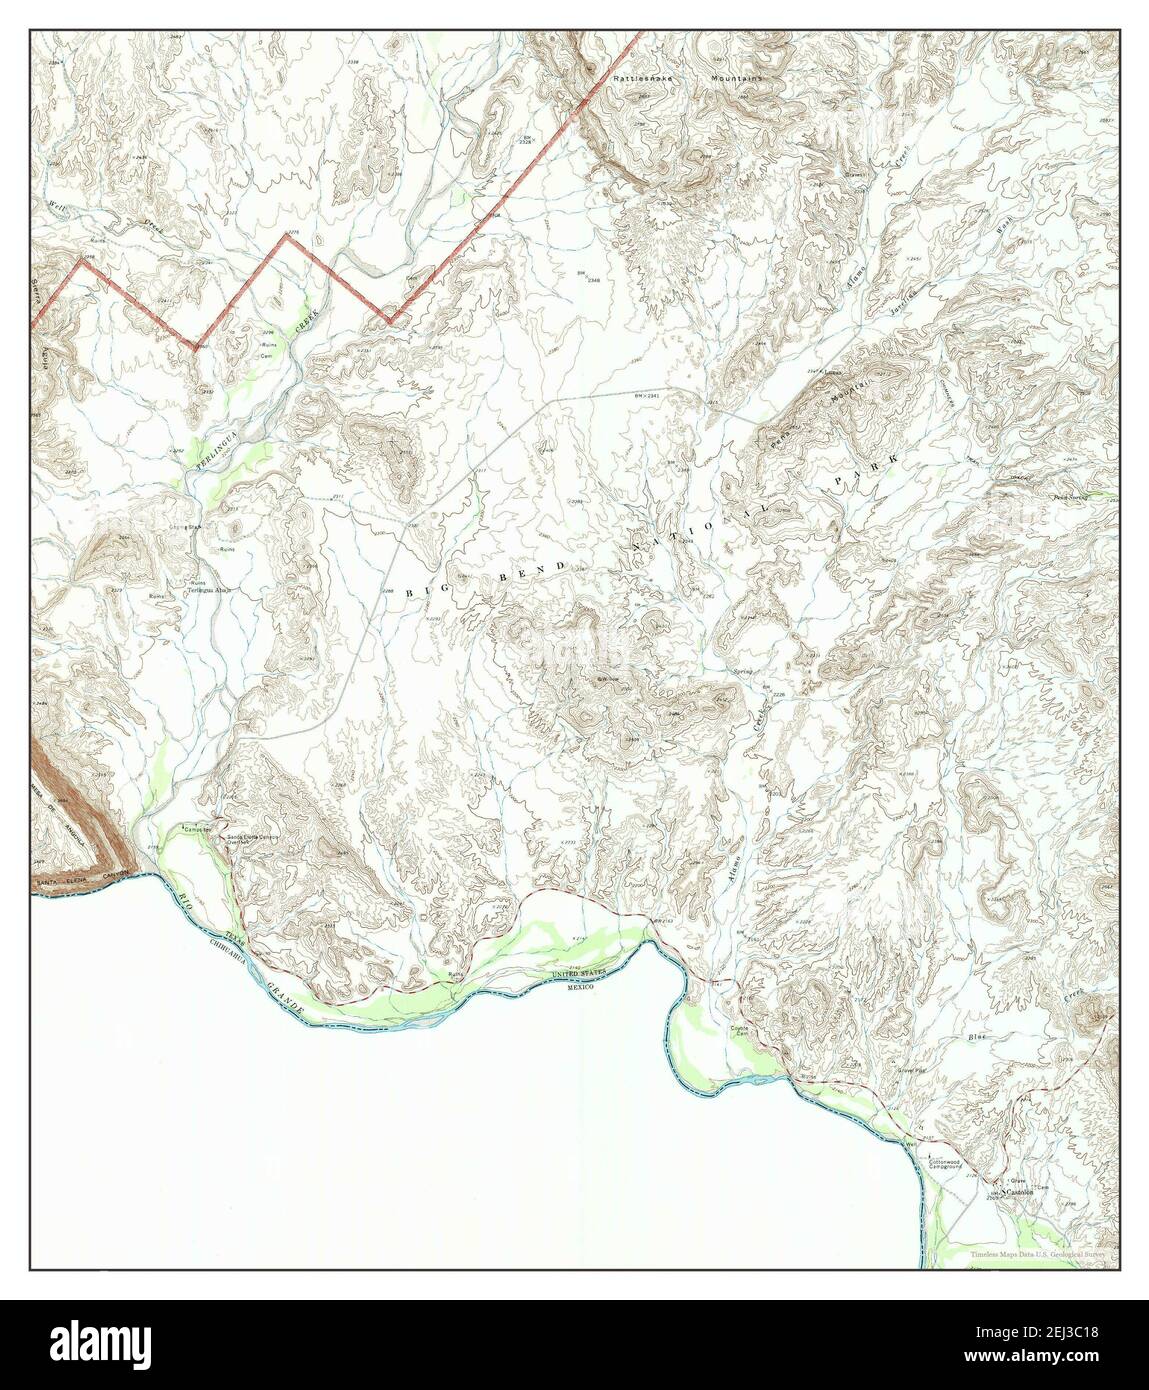 Castolon, Texas, Karte 1971, 1:24000, Vereinigte Staaten von Amerika von Timeless Maps, Daten U.S. Geological Survey Stockfoto